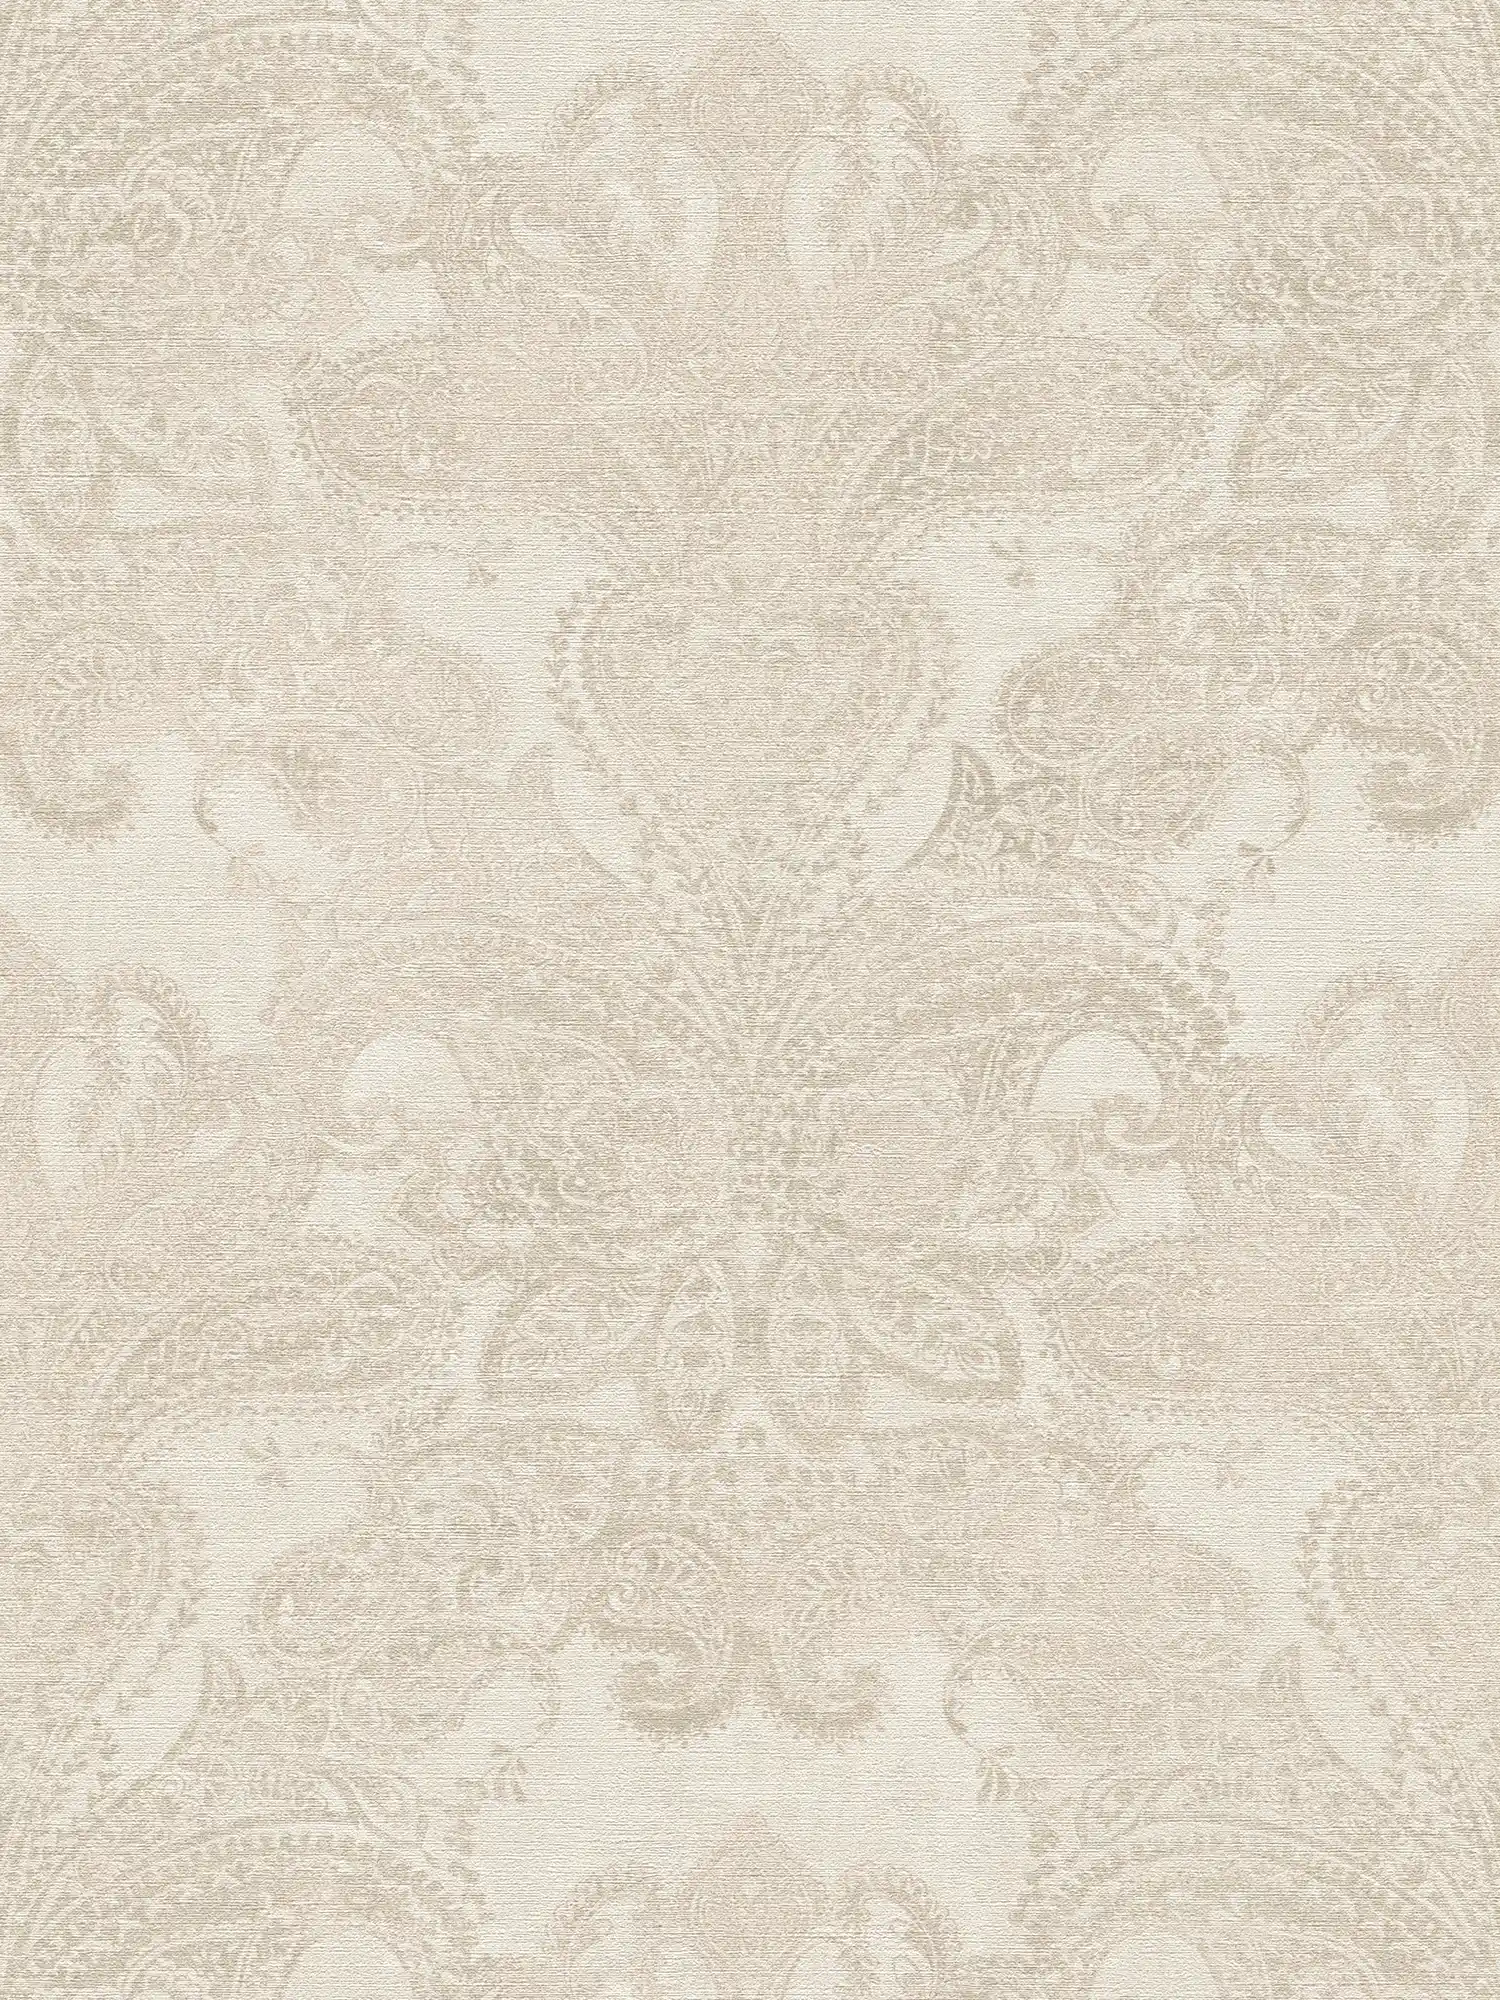 Papier peint baroque avec ornements à grande échelle - blanc, crème, gris
